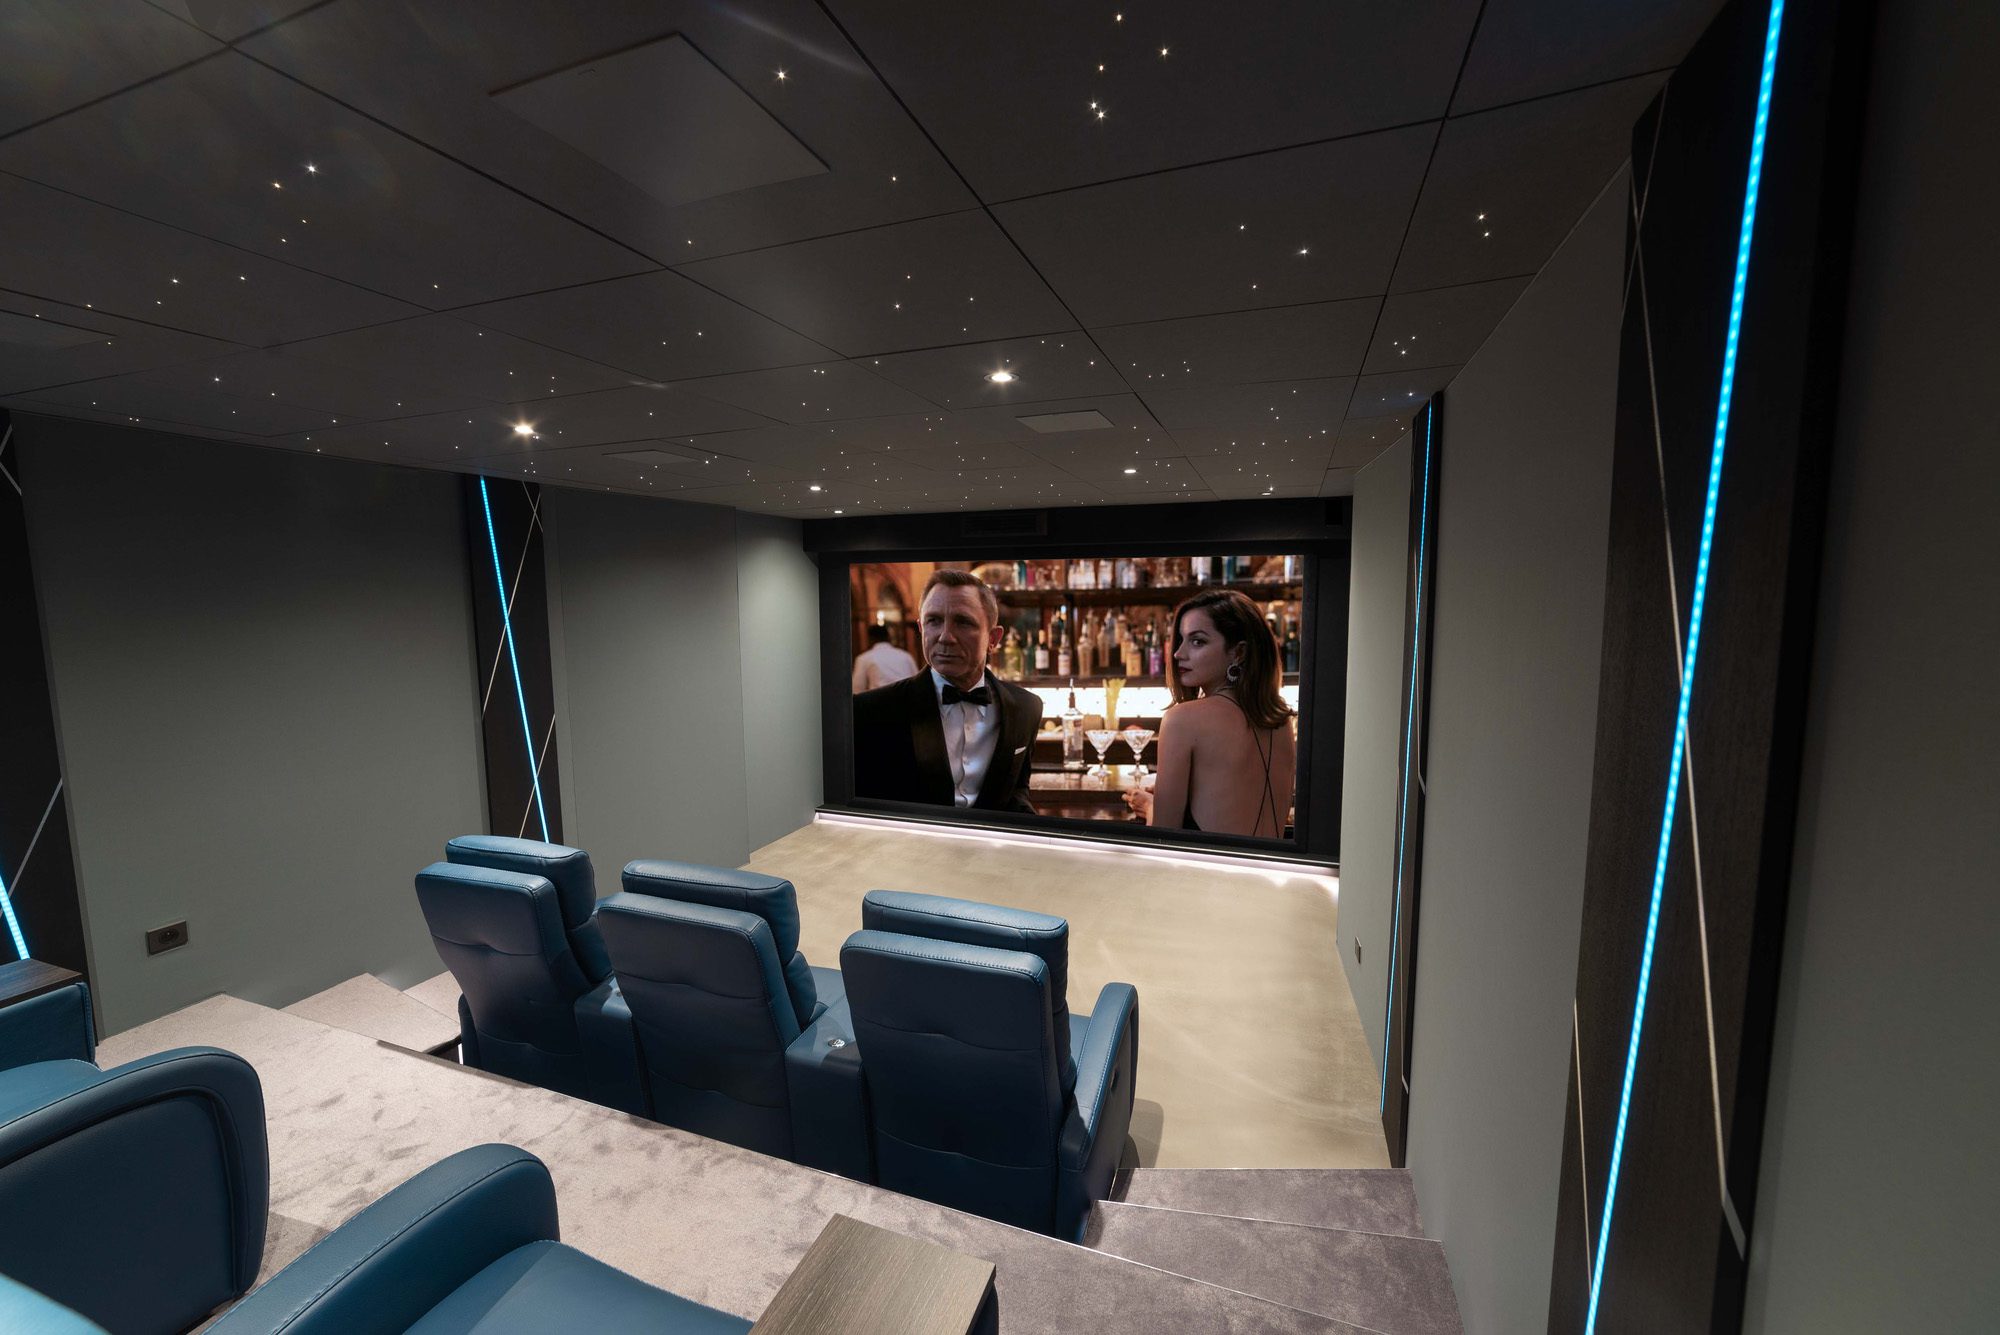 Salle de cinéma privée 32m2, 7 places, fauteuils en cuir bleu, vant-scène, ciel étoilé, panneaux décor en chêne éclairés par un ruban led RGB à Meaux